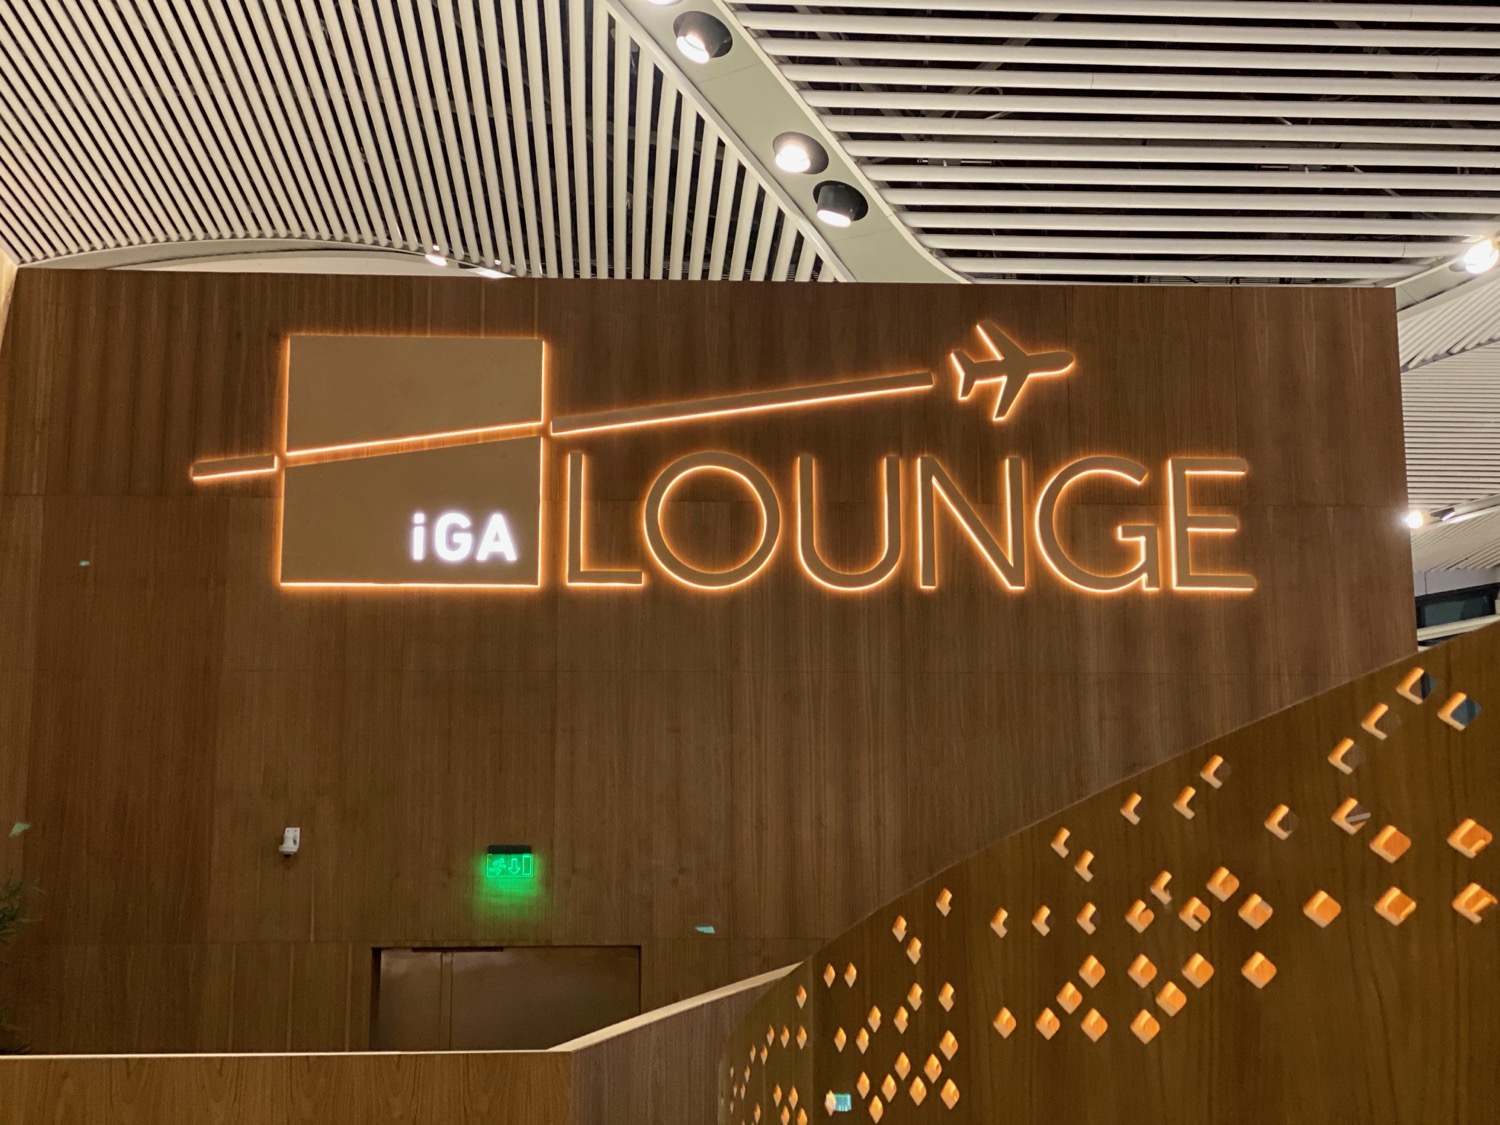 IGA Lounge